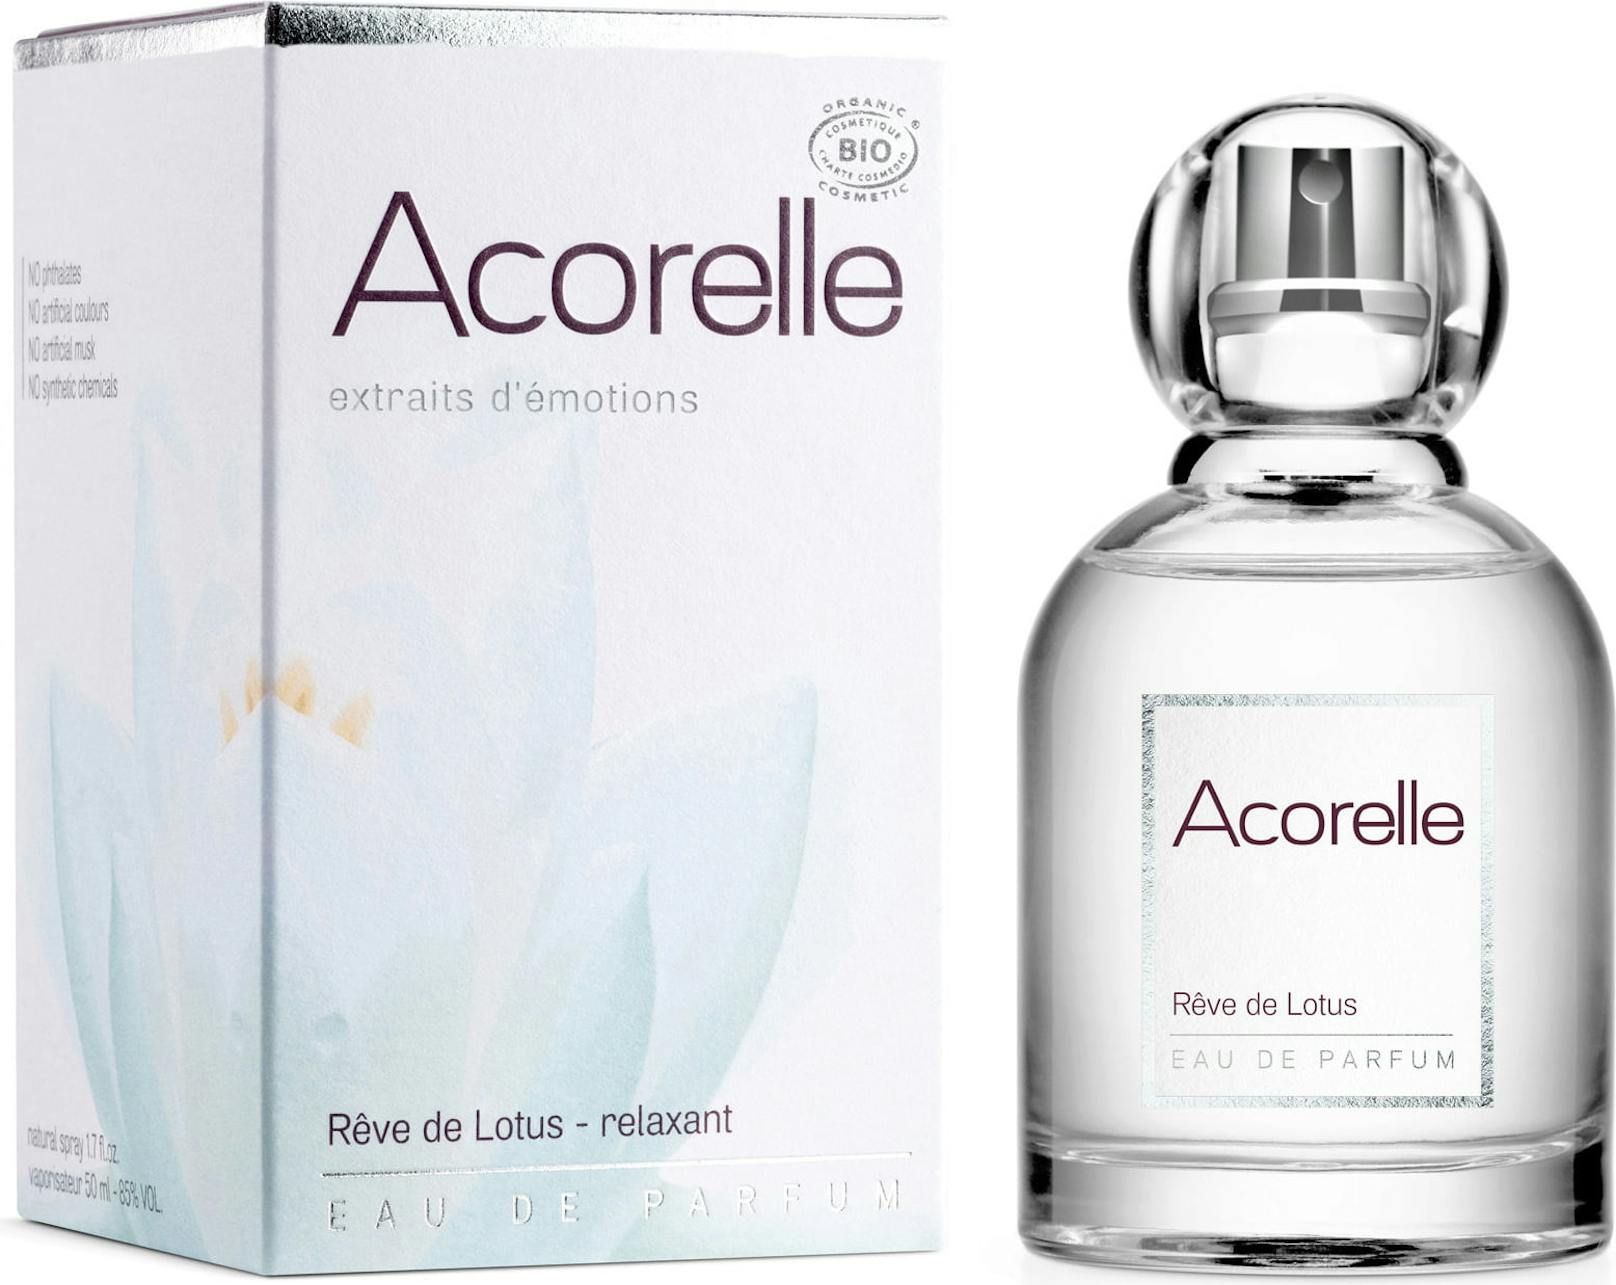 Dieses Parfum mit ätherischen Ölen von Bergamotte, Minze und Lavendel sorgt für Entspannung und Ruhe.<strong> Bio Eau de Parfum Lotus Dream von Acorelle</strong>, um 31,19 Euro auf <a href="https://www.cosmeterie.at/acorelle/bio-eau-de-parfum-lotus-dream">Cosmeterie.at</a>.